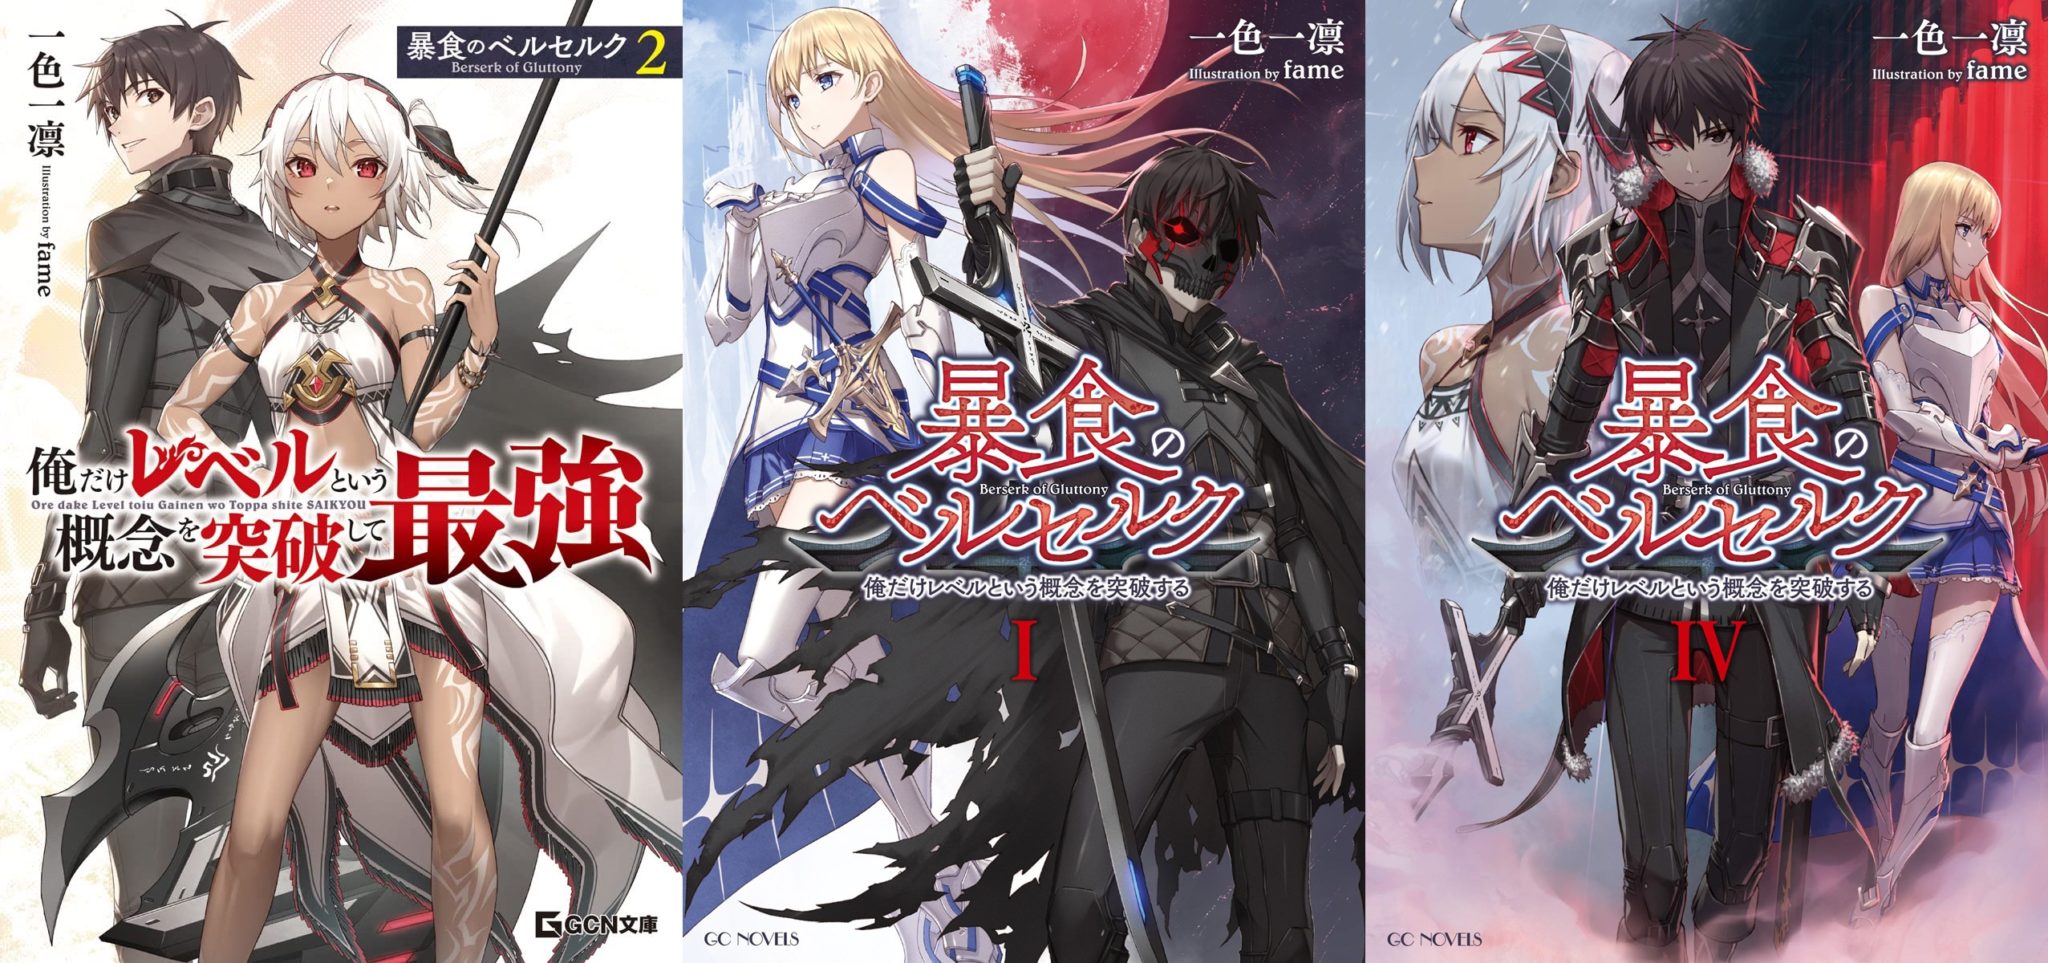 Animes In Japan 🎄 on X: INFO A light novel de Boushoku no Berserk ( Berserk of Gluttony) tem adaptação em anime confirmada. 📌Mais informações  em breve.  / X